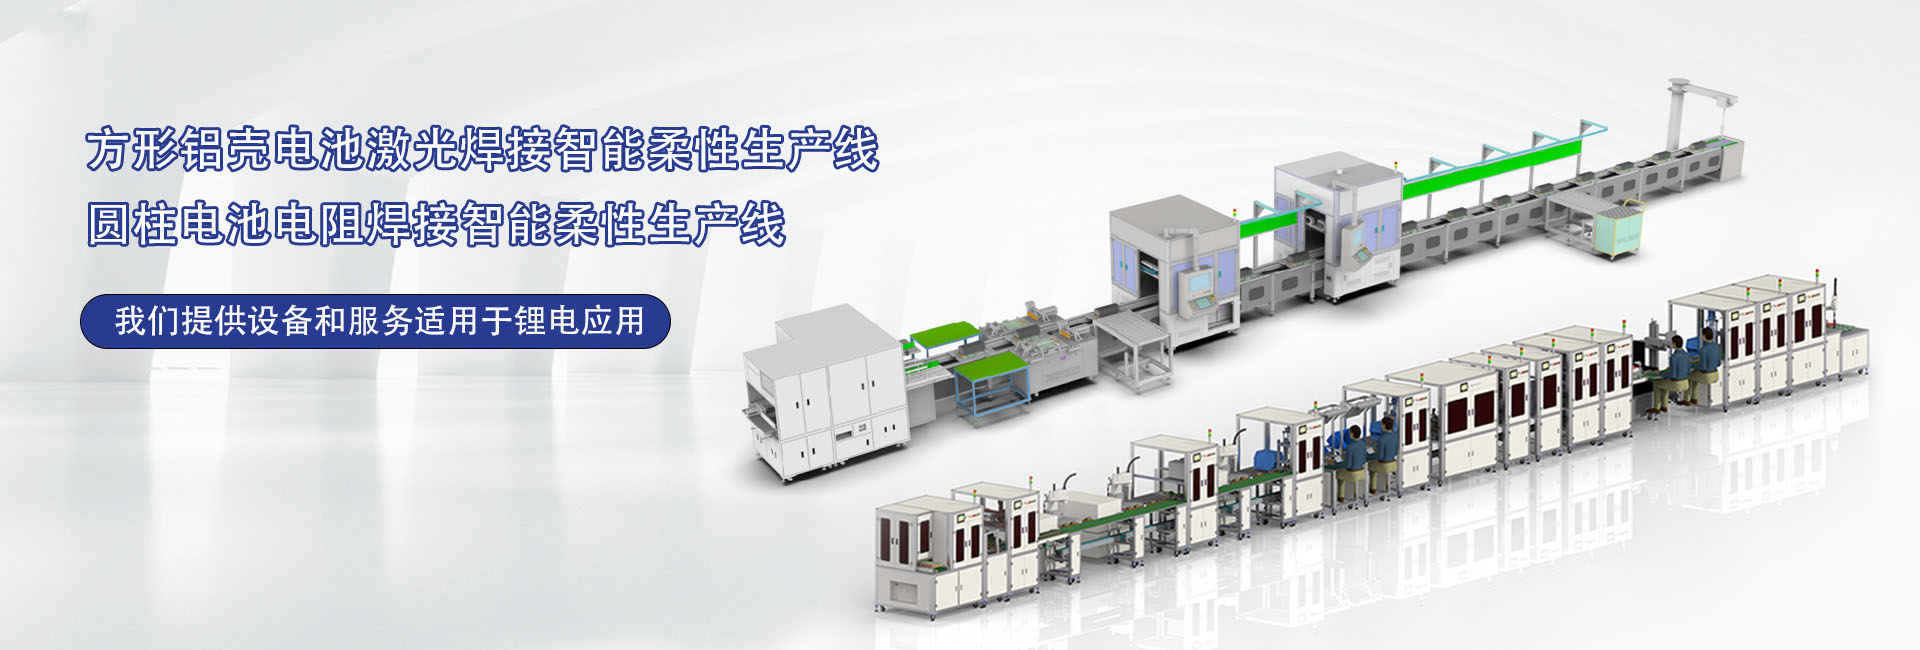 鋰電池模組智能生產(chǎn)線(xiàn)